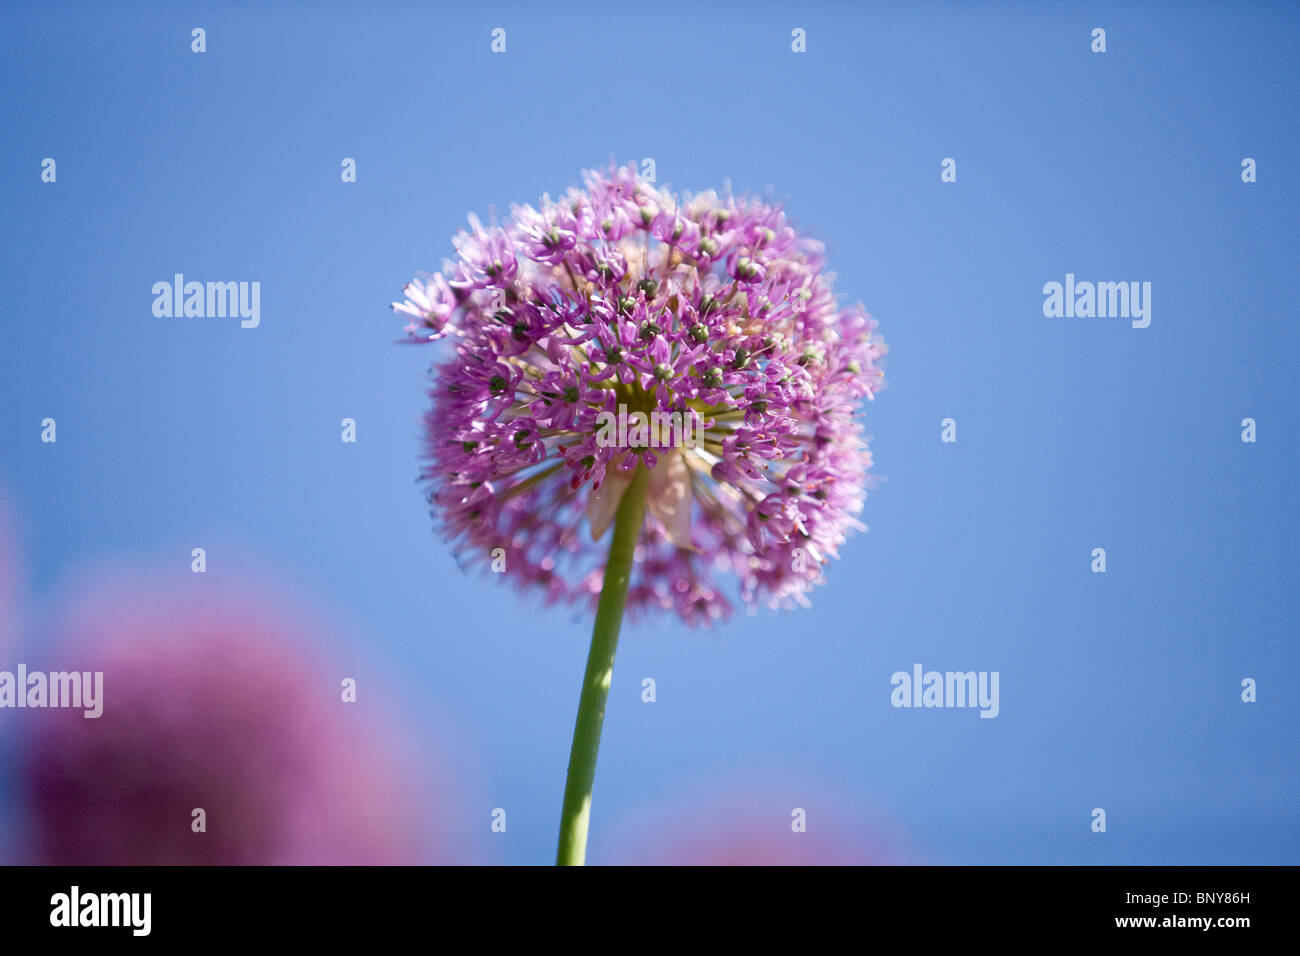 Allium Purple flower head against blue sky Banque D'Images